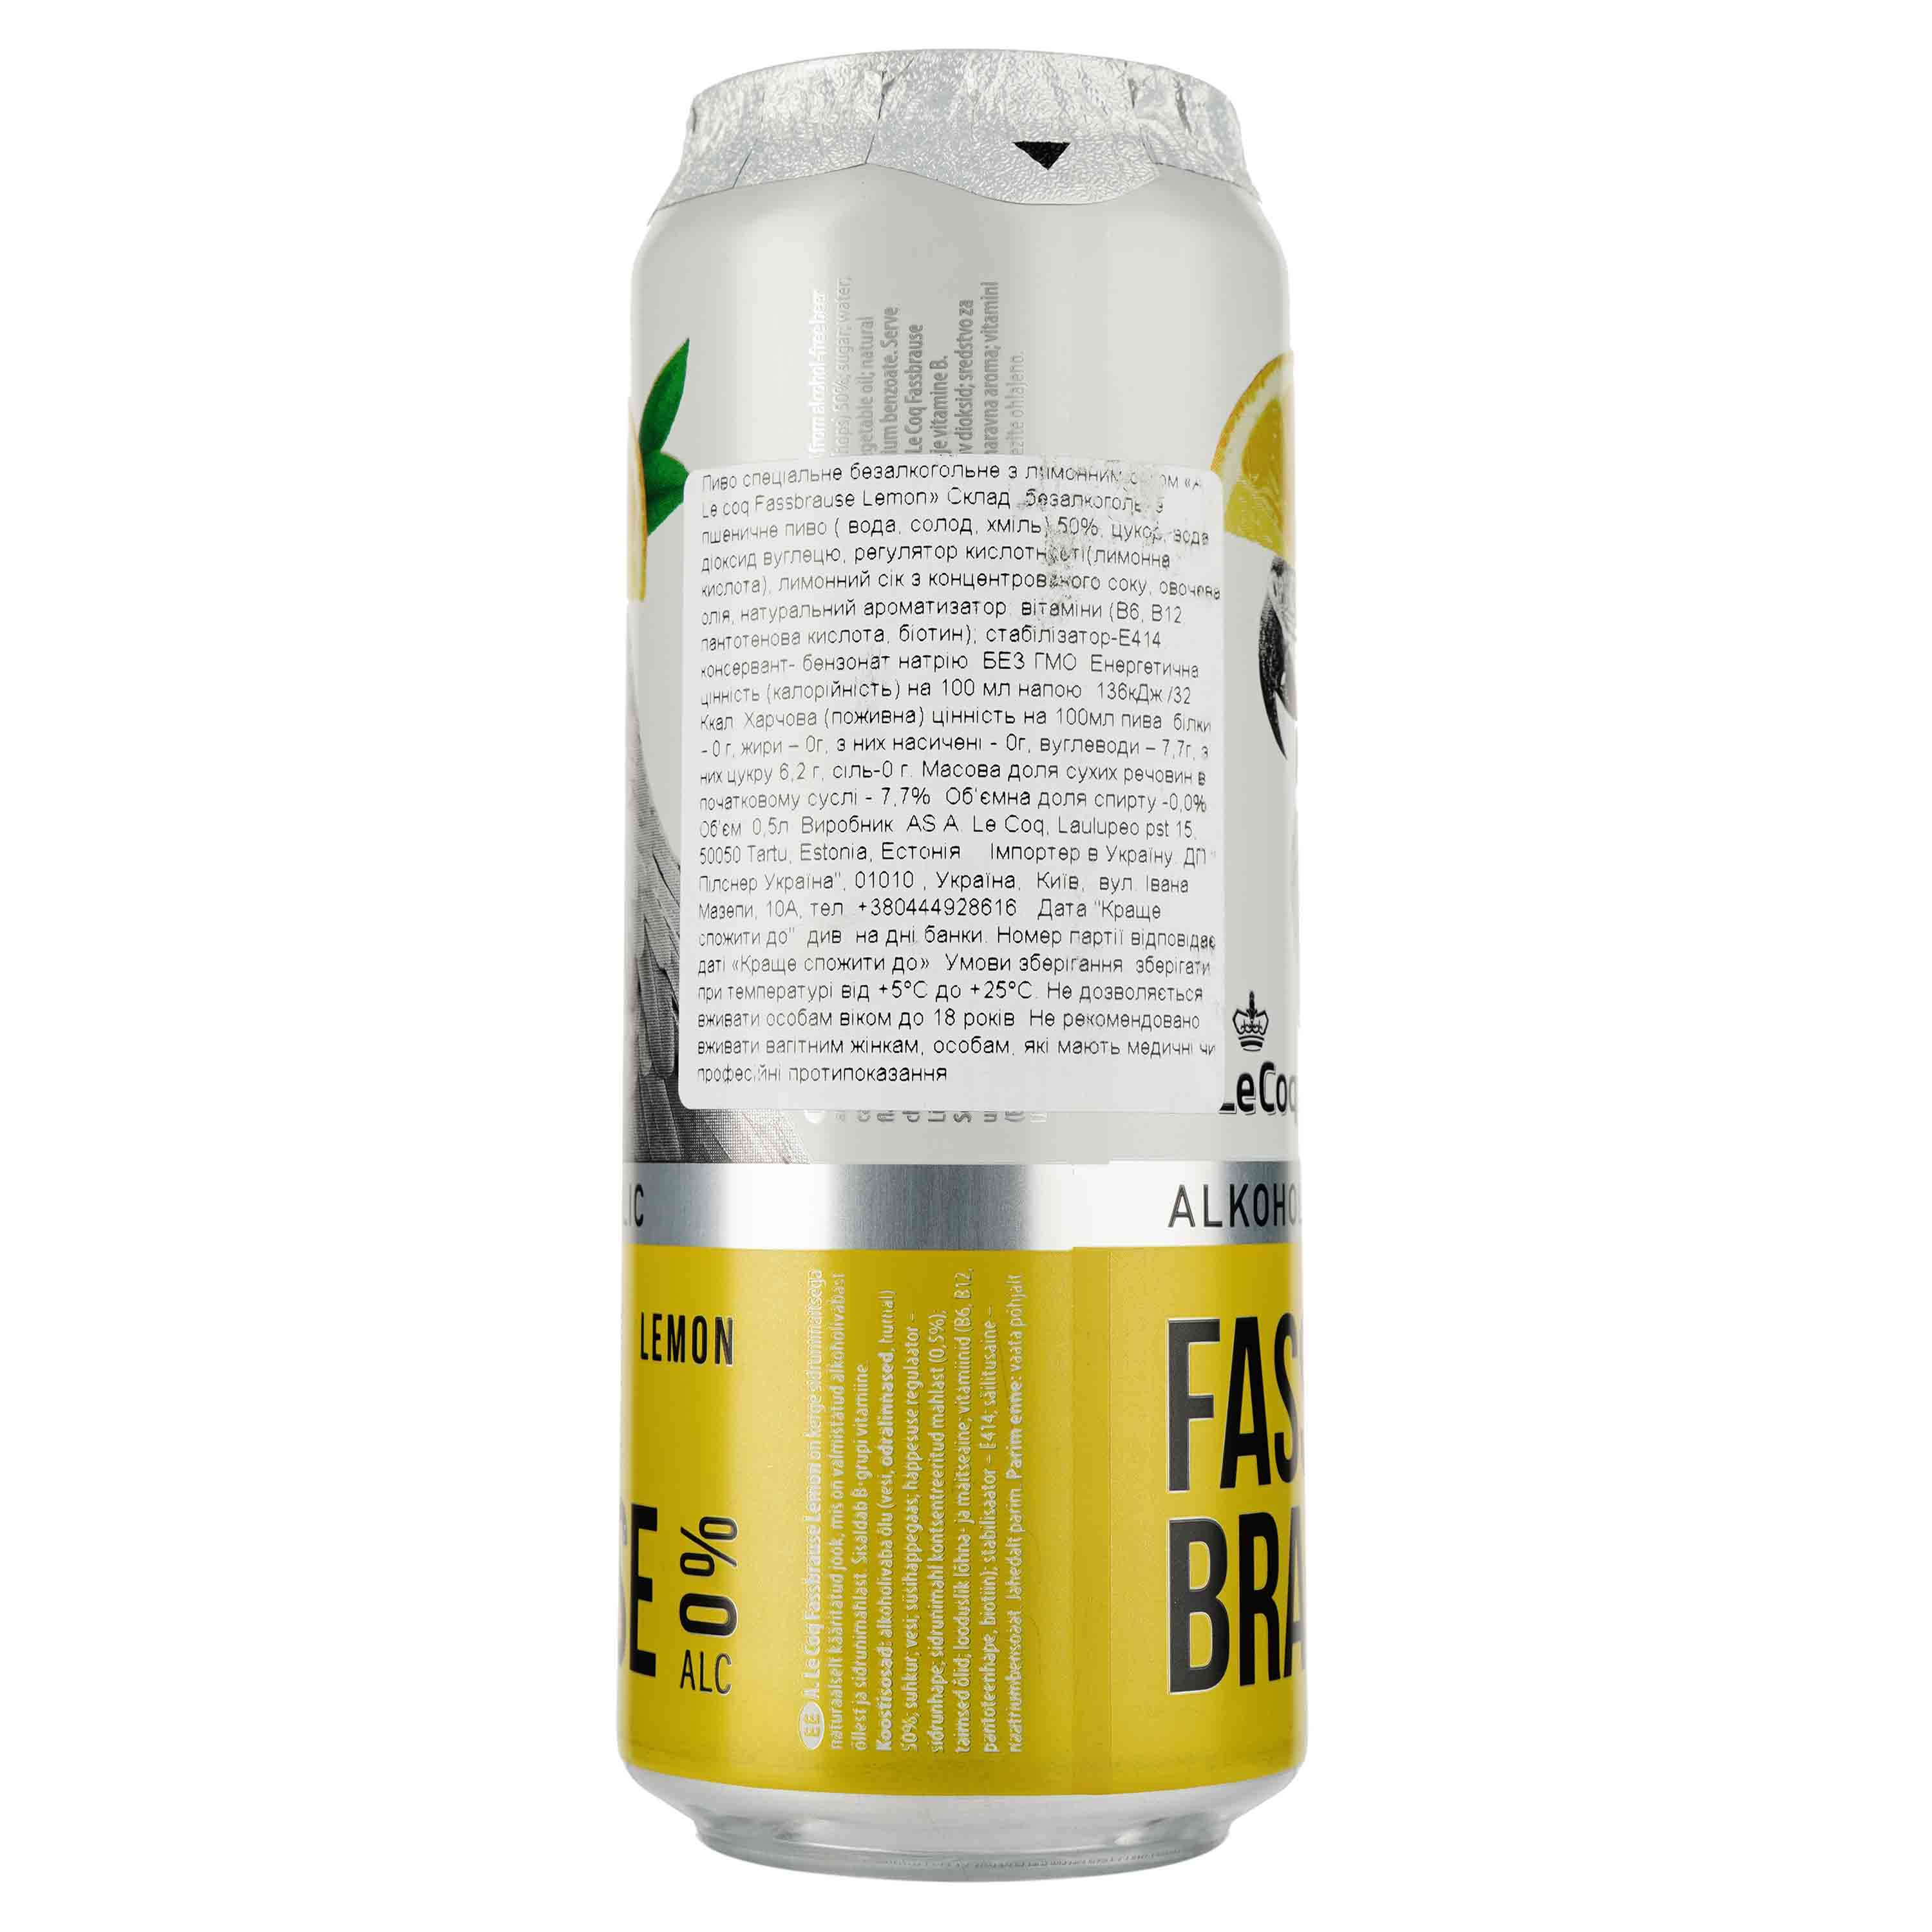 Пиво безалкогольное Le Coq Fassbrause Lemon светлое, ж/б, 0.5 л - фото 2